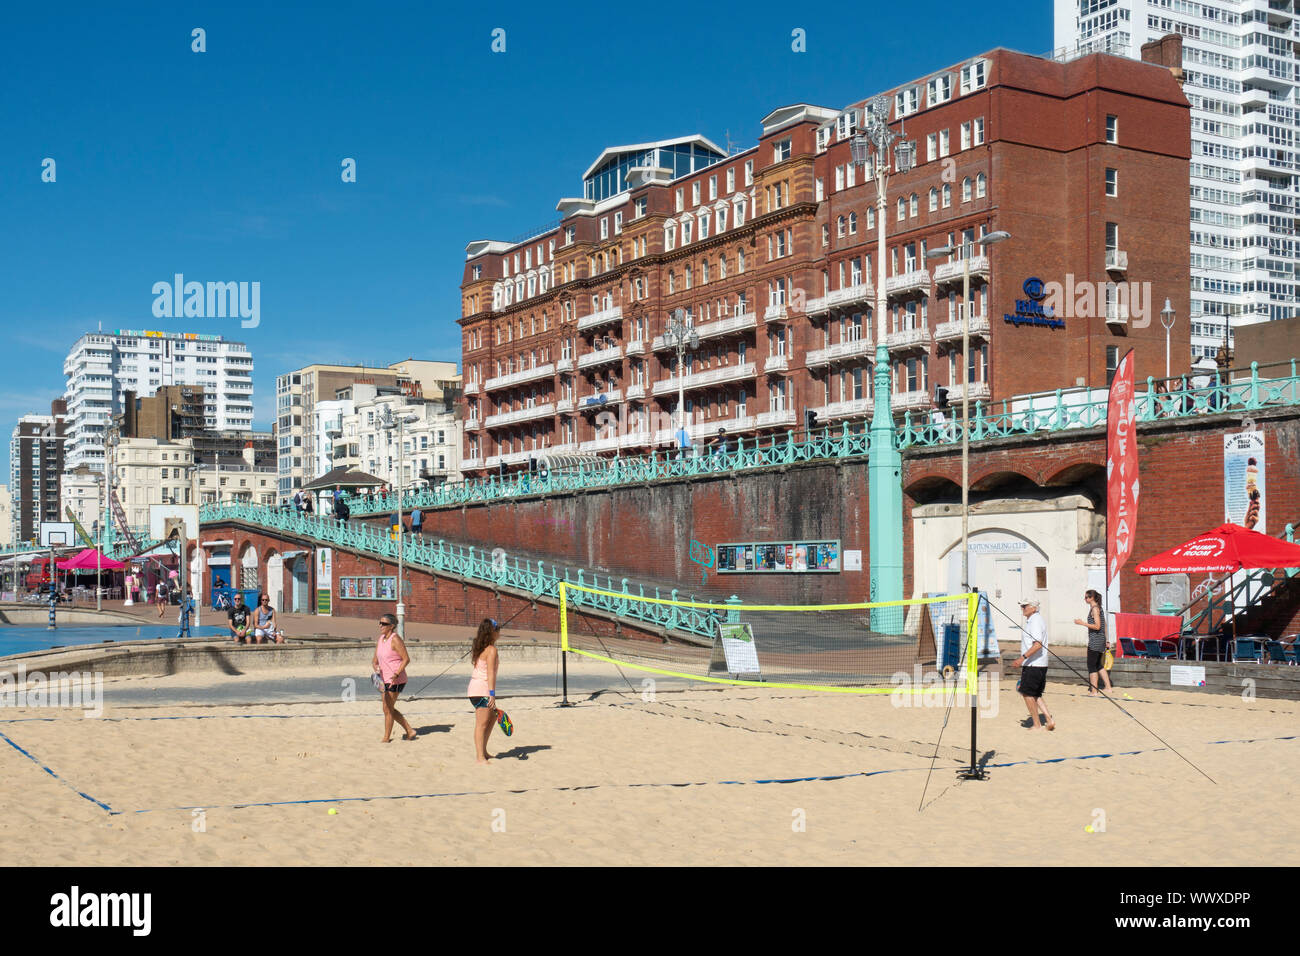 Les gens jouer au tennis sur la plage de Brighton. Brighton, East Sussex, England, UK Banque D'Images